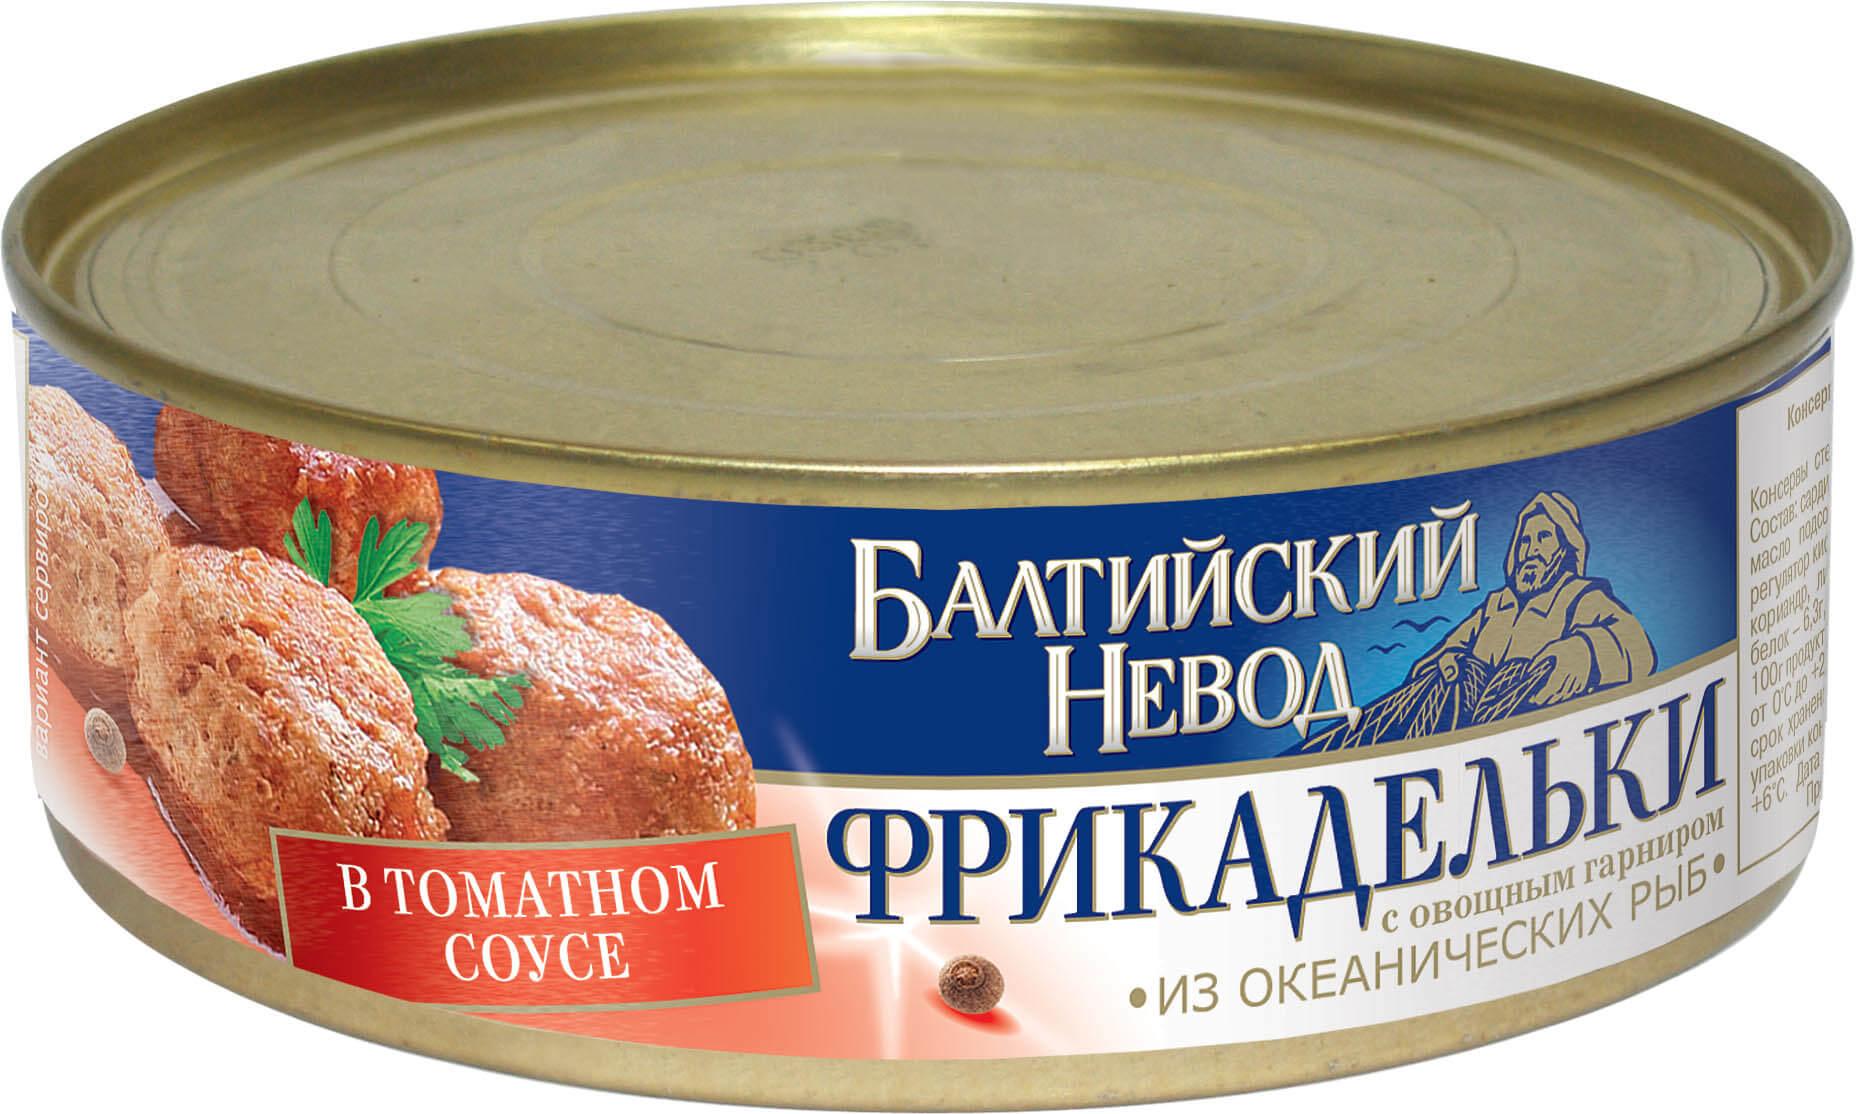 Фрикадельки Балтийский невод с овощним гарниром в томатном соусе 230 гр., ж/б